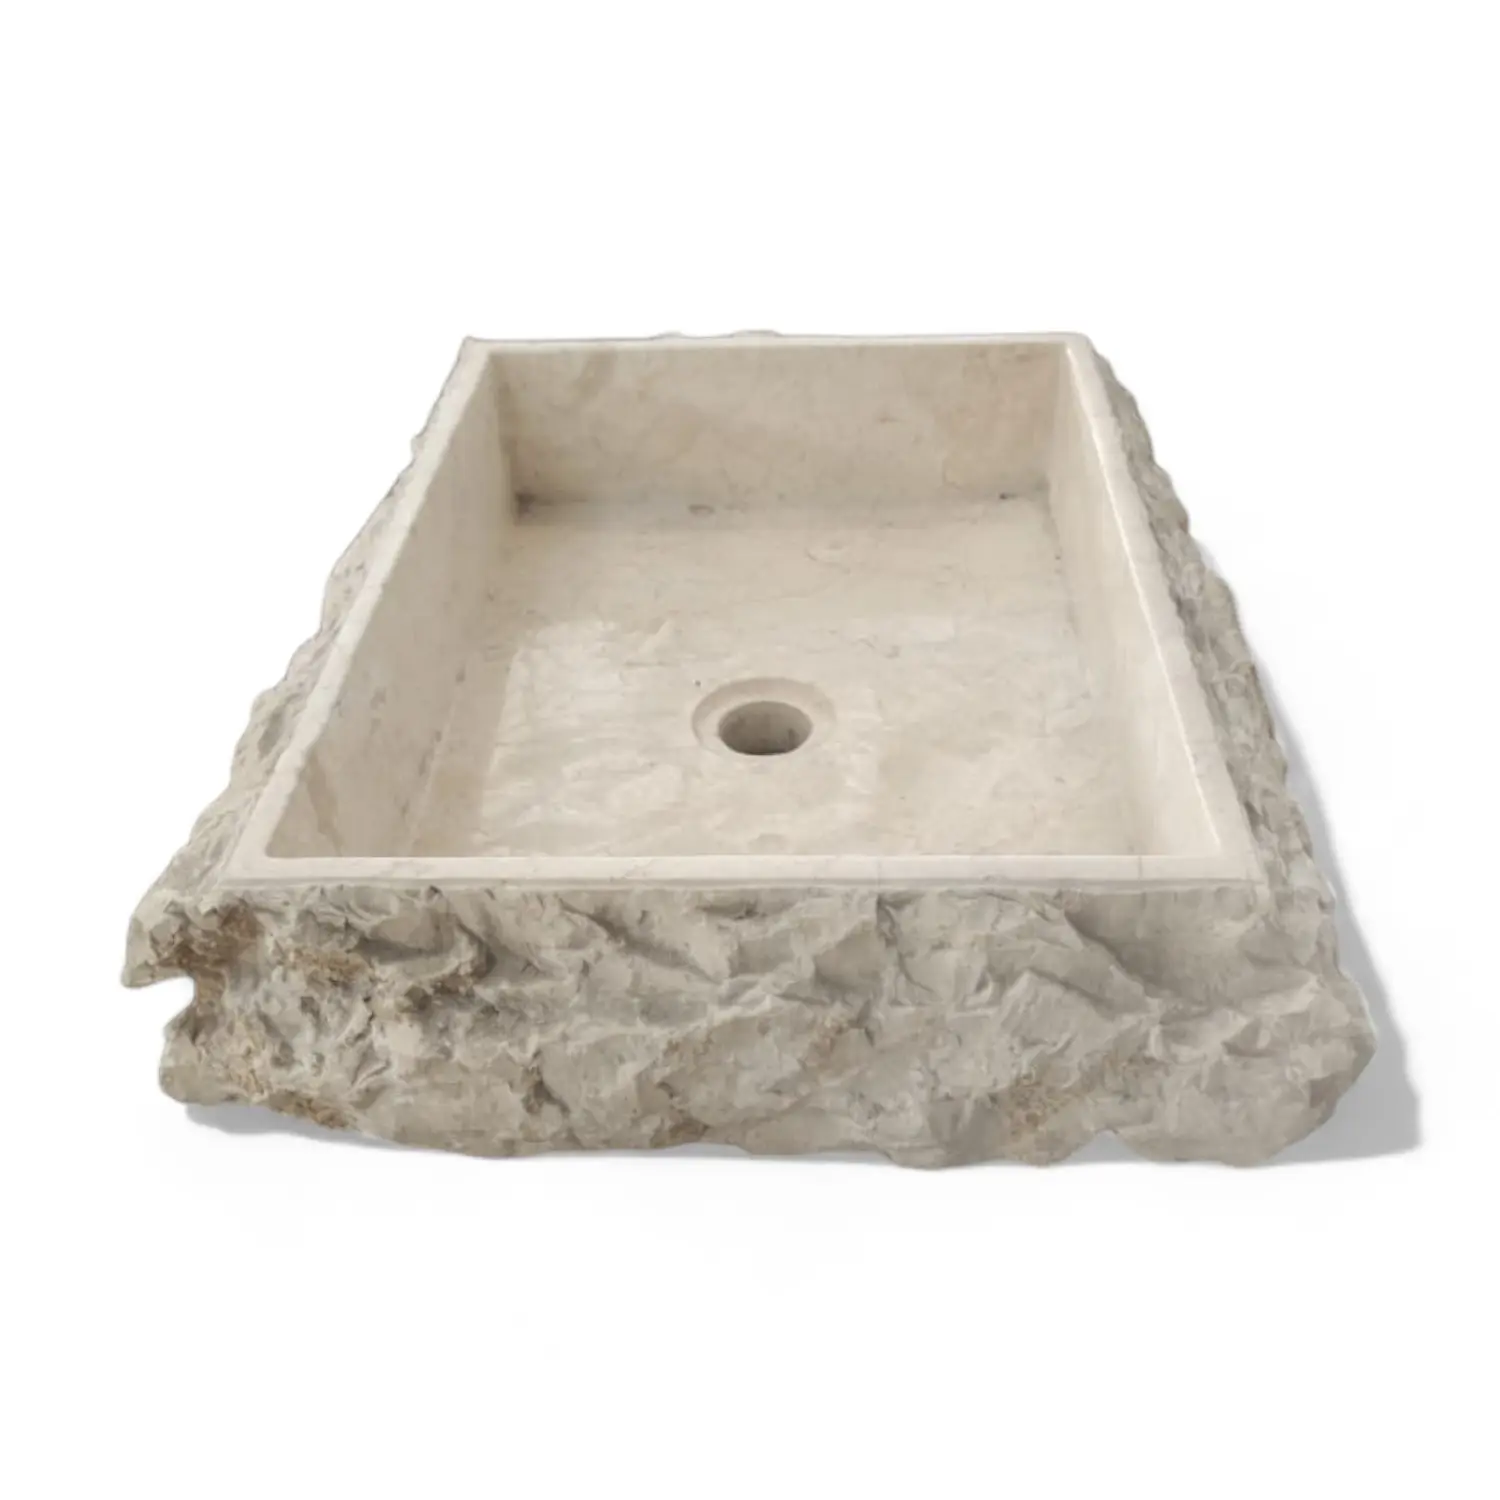 Lavabo in pietra naturale in marmo color crema rettangolare pietra rustica lavandini da bagno dimensioni 50x40x12 cm per mobili da bagno